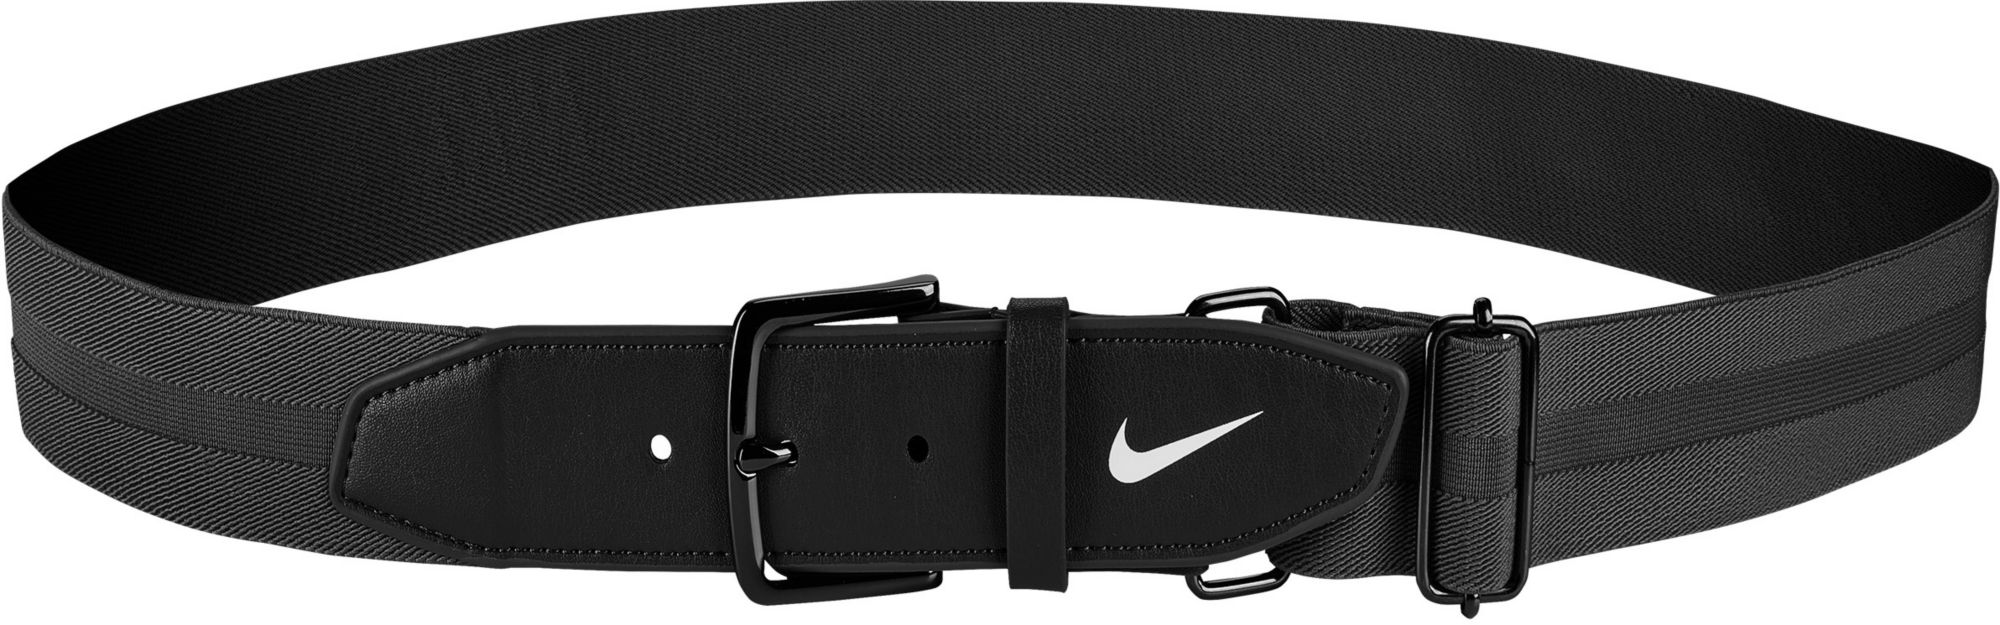 Nike Adult Adjustable Baseball/Softball Belt 3.0